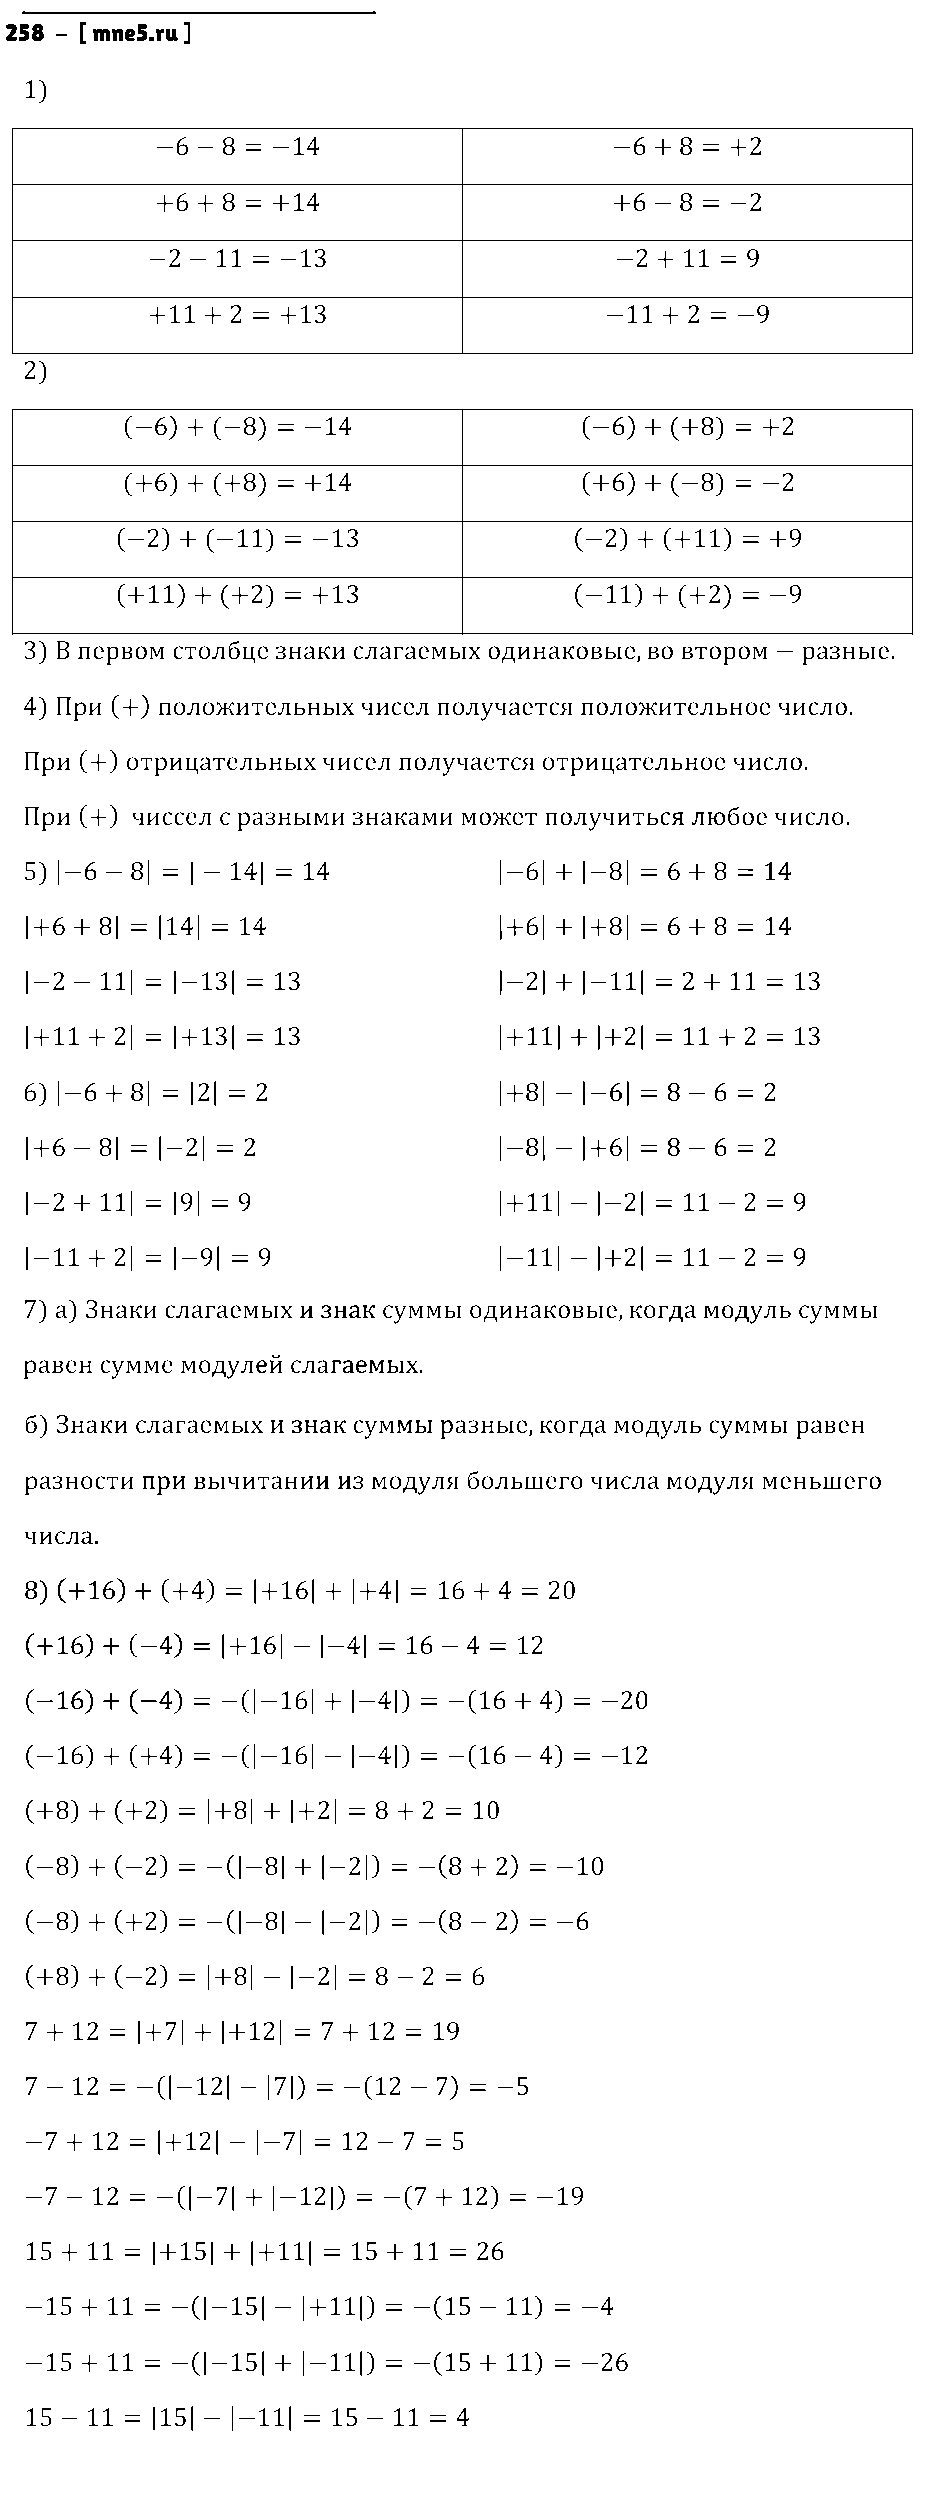 ГДЗ Математика 6 класс - 258